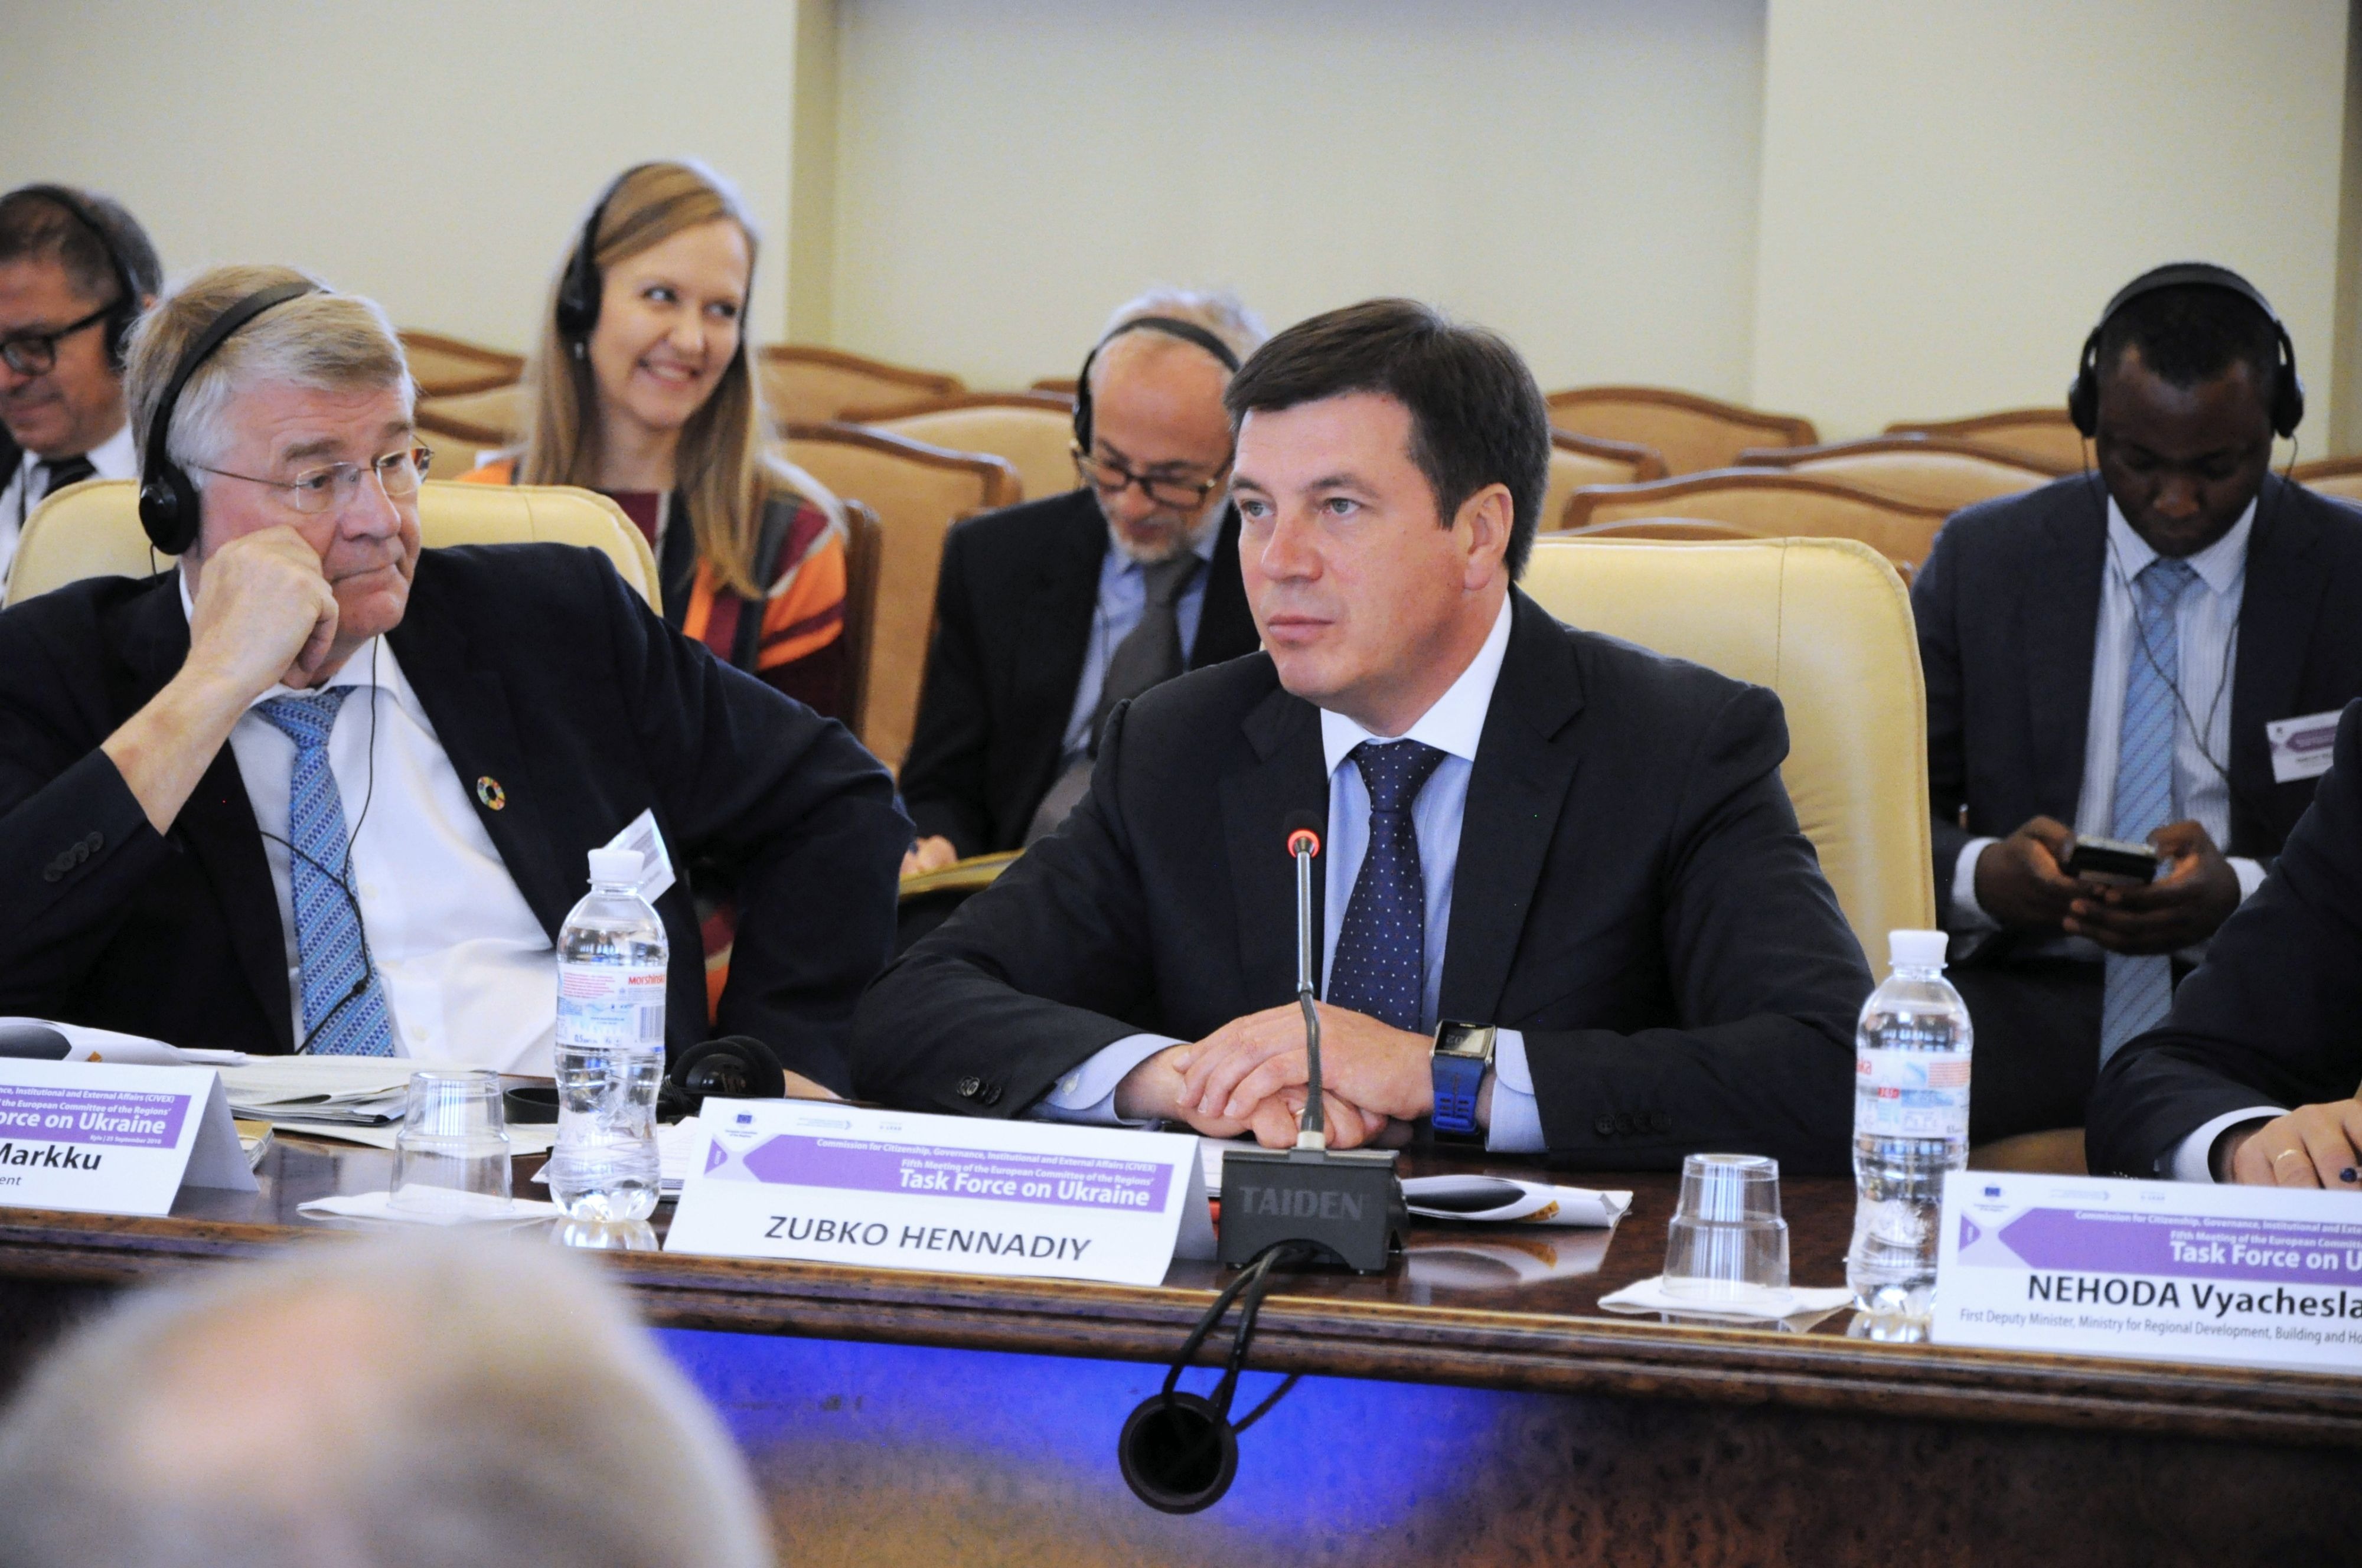 Досвід розвитку місцевого самоврядування європейських країн є ключовим для громад України, — Геннадій Зубко